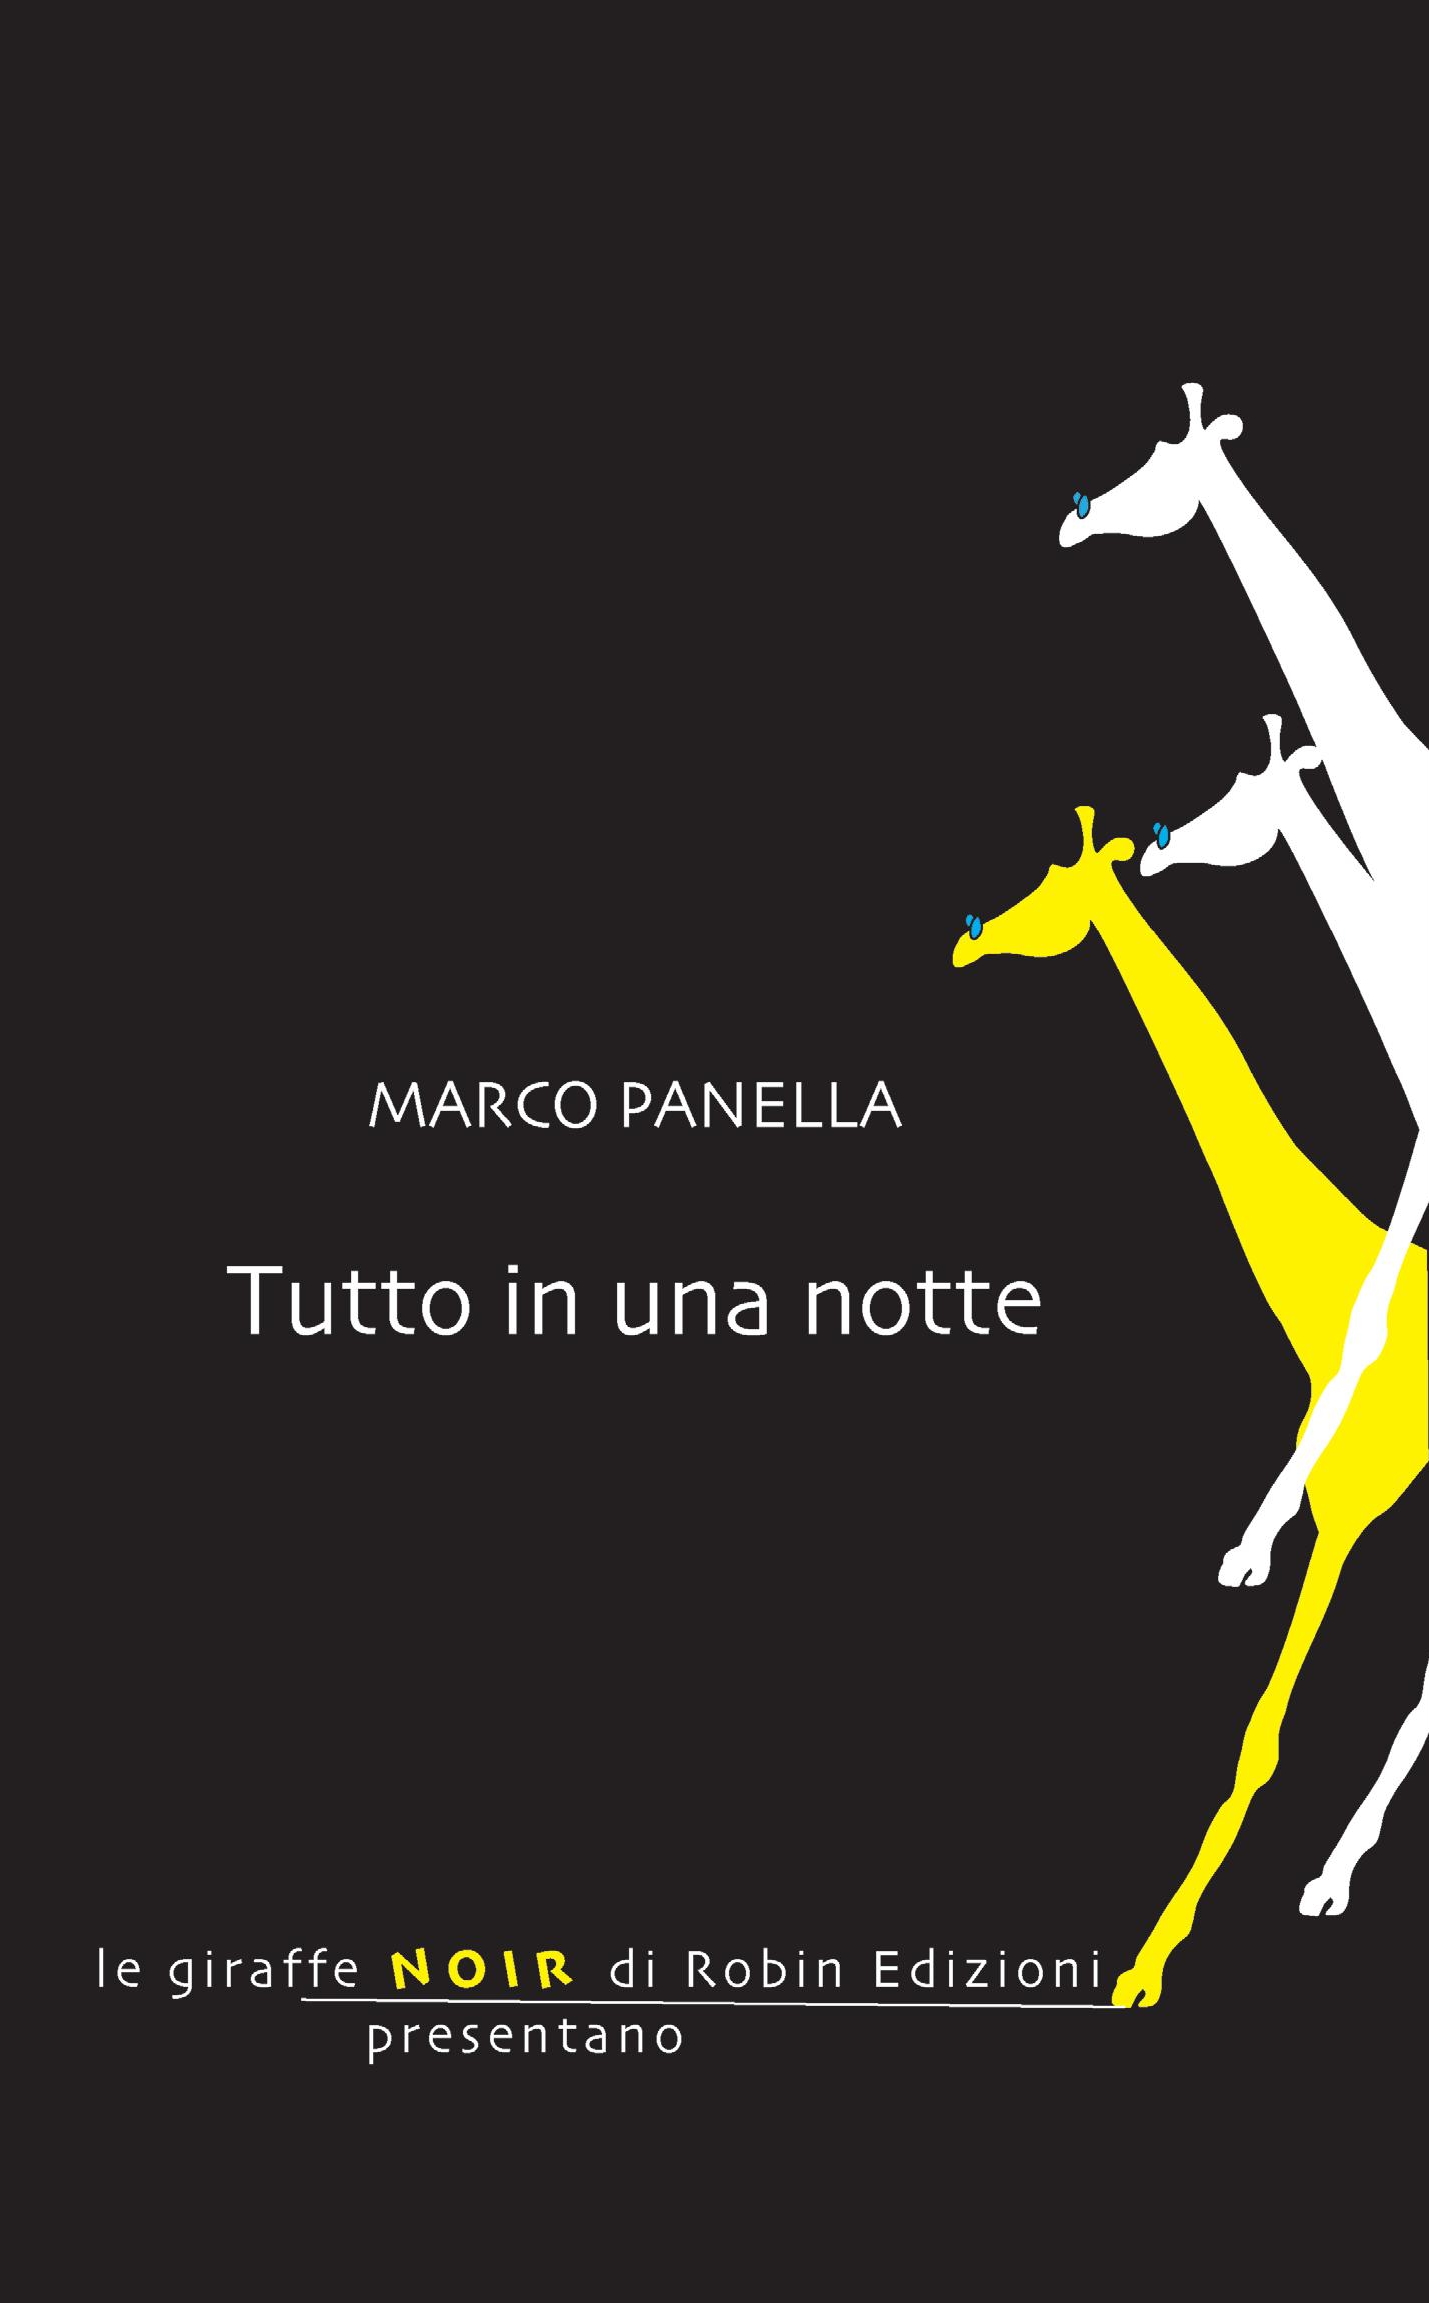 Marco Panella presenta il thriller “Tutto in una notte”